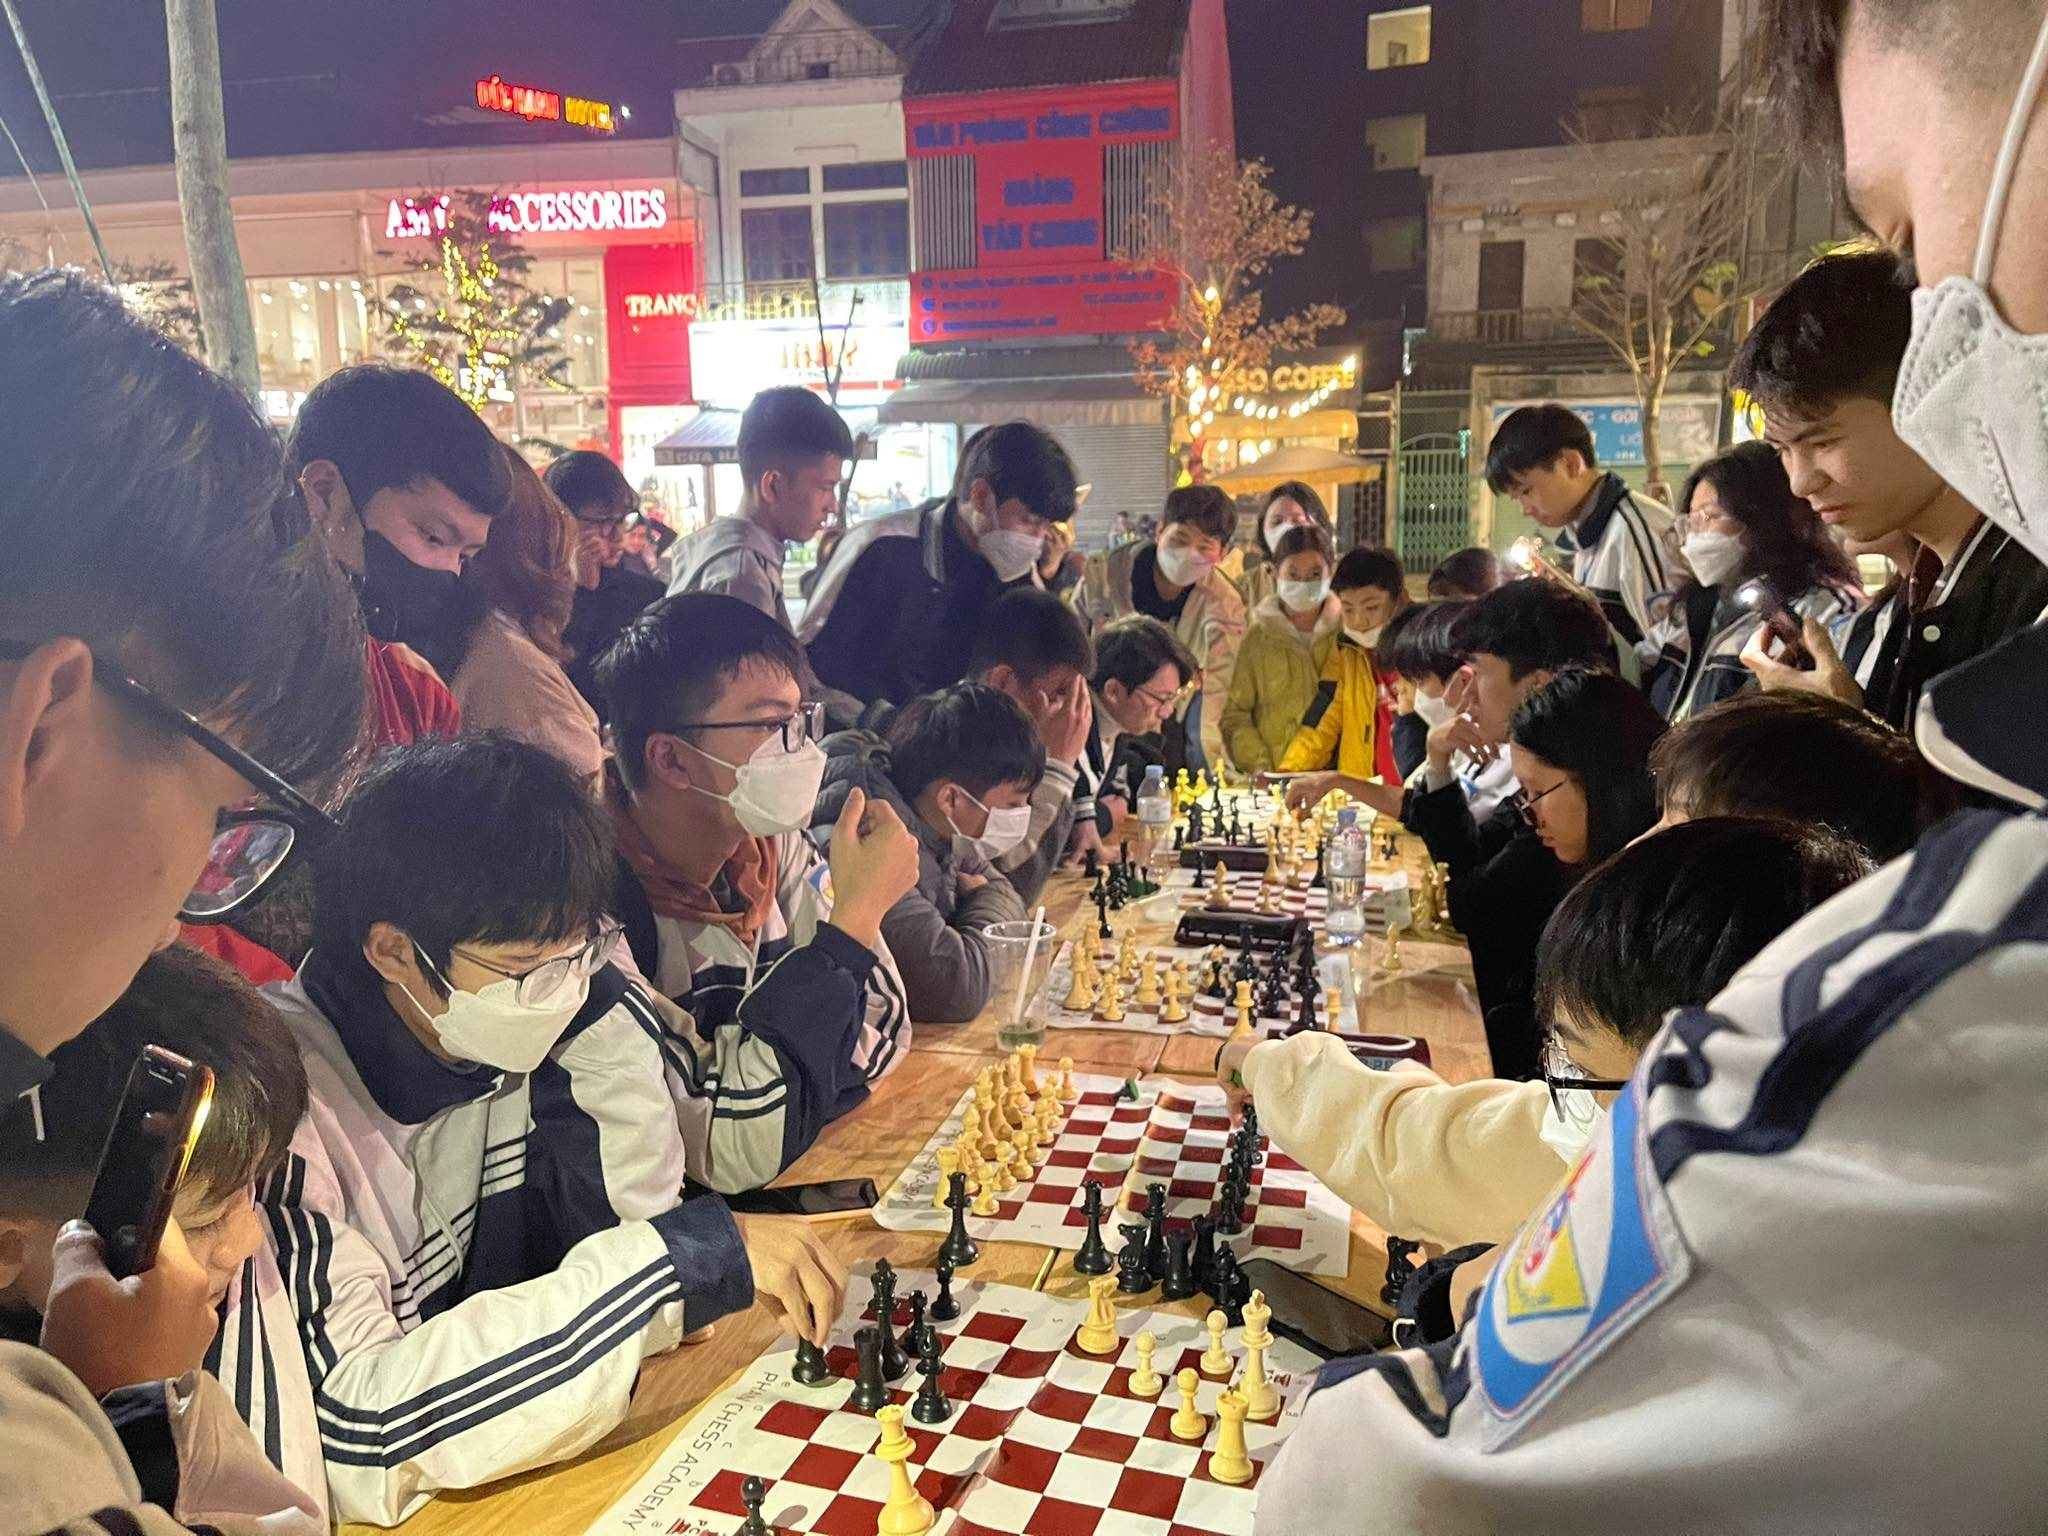 bna-hoat-dong-street-chess-co-vua-duong-pho-do-pca-to-chuc-thu-hut-nhieu-nguoi-tham-gia-anh-cscc-8825.png